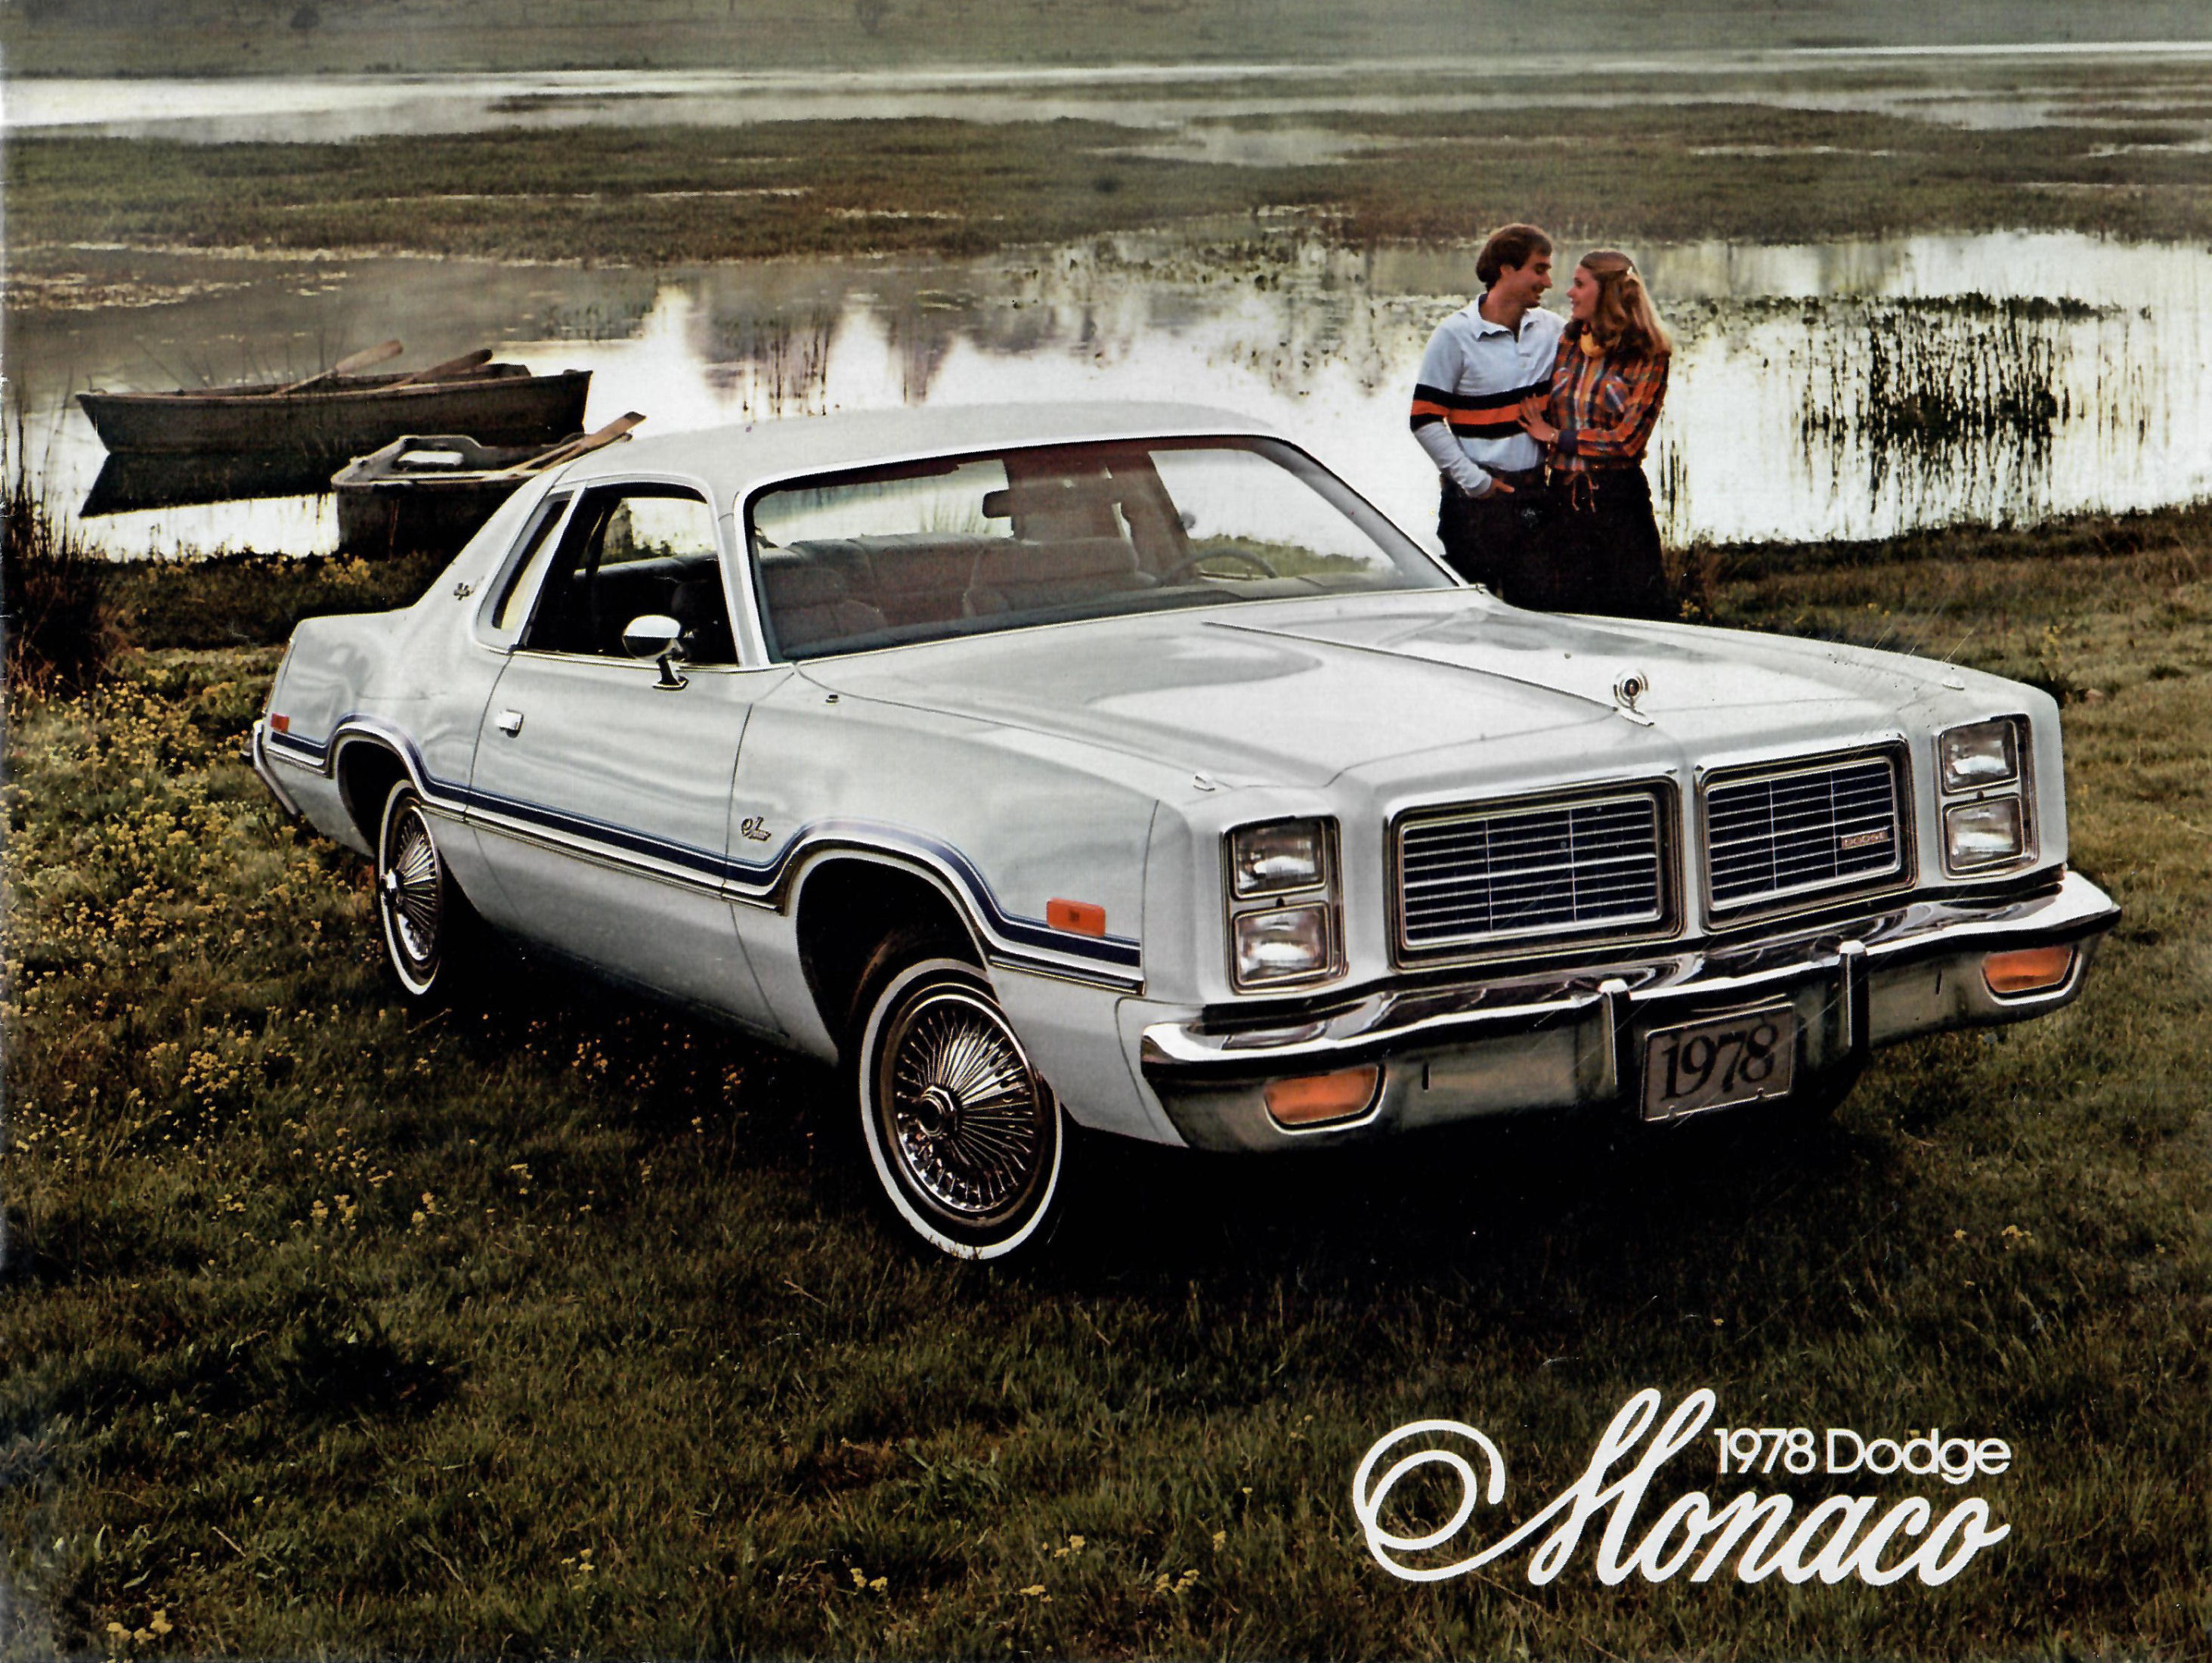 1978 Dodge Monaco-01